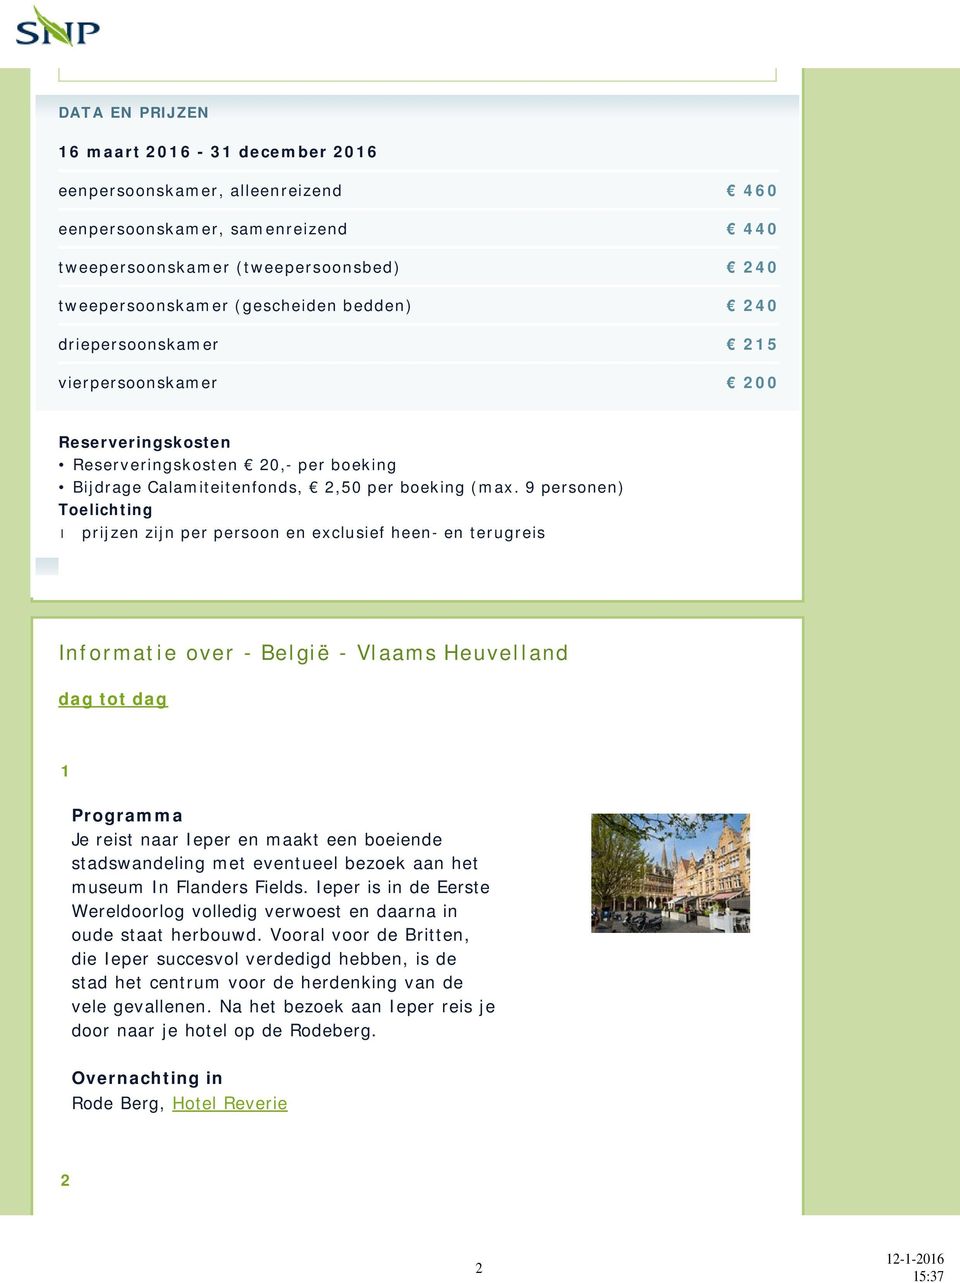 9 personen) Toelichting prijzen zijn per persoon en exclusief heen- en terugreis Informatie over - België - Vlaams Heuvelland dag tot dag 1 Programma Je reist naar Ieper en maakt een boeiende